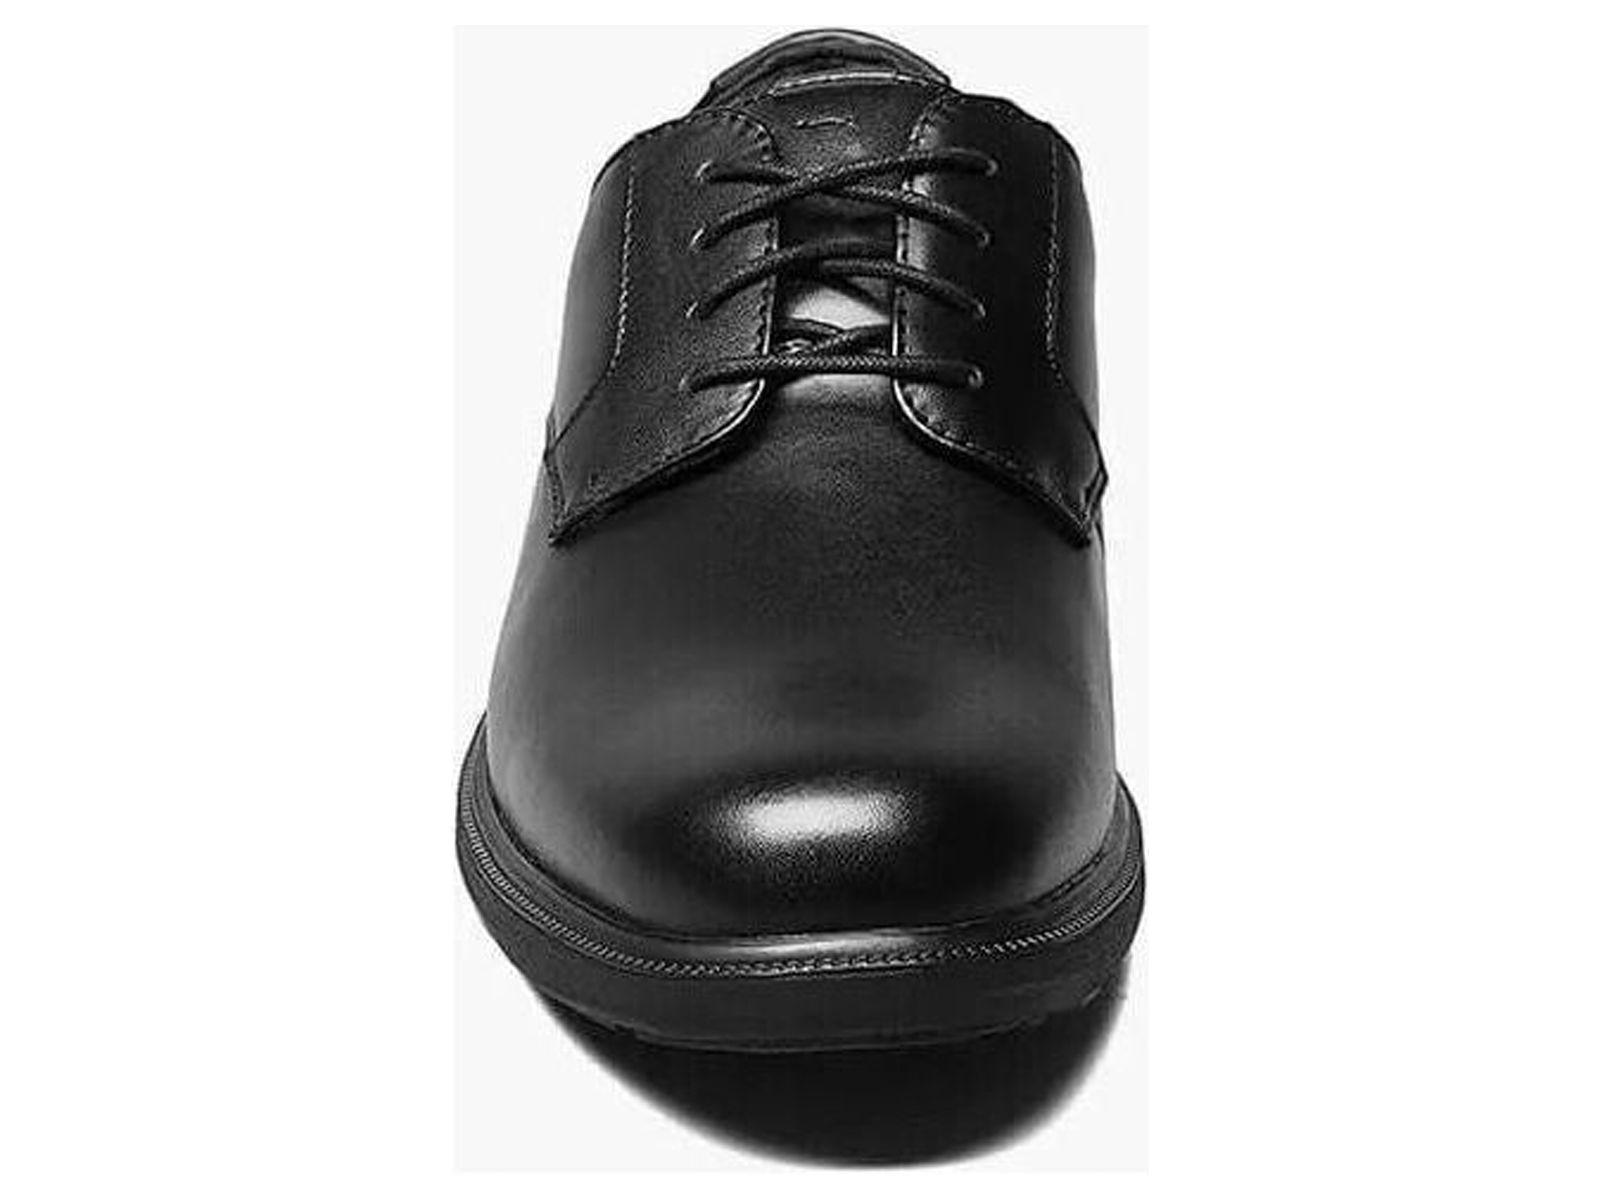 Nunn Bush Marvin Street Plain Toe Oxford Shoes Kore Leather Black 84715-001 - image 3 of 7